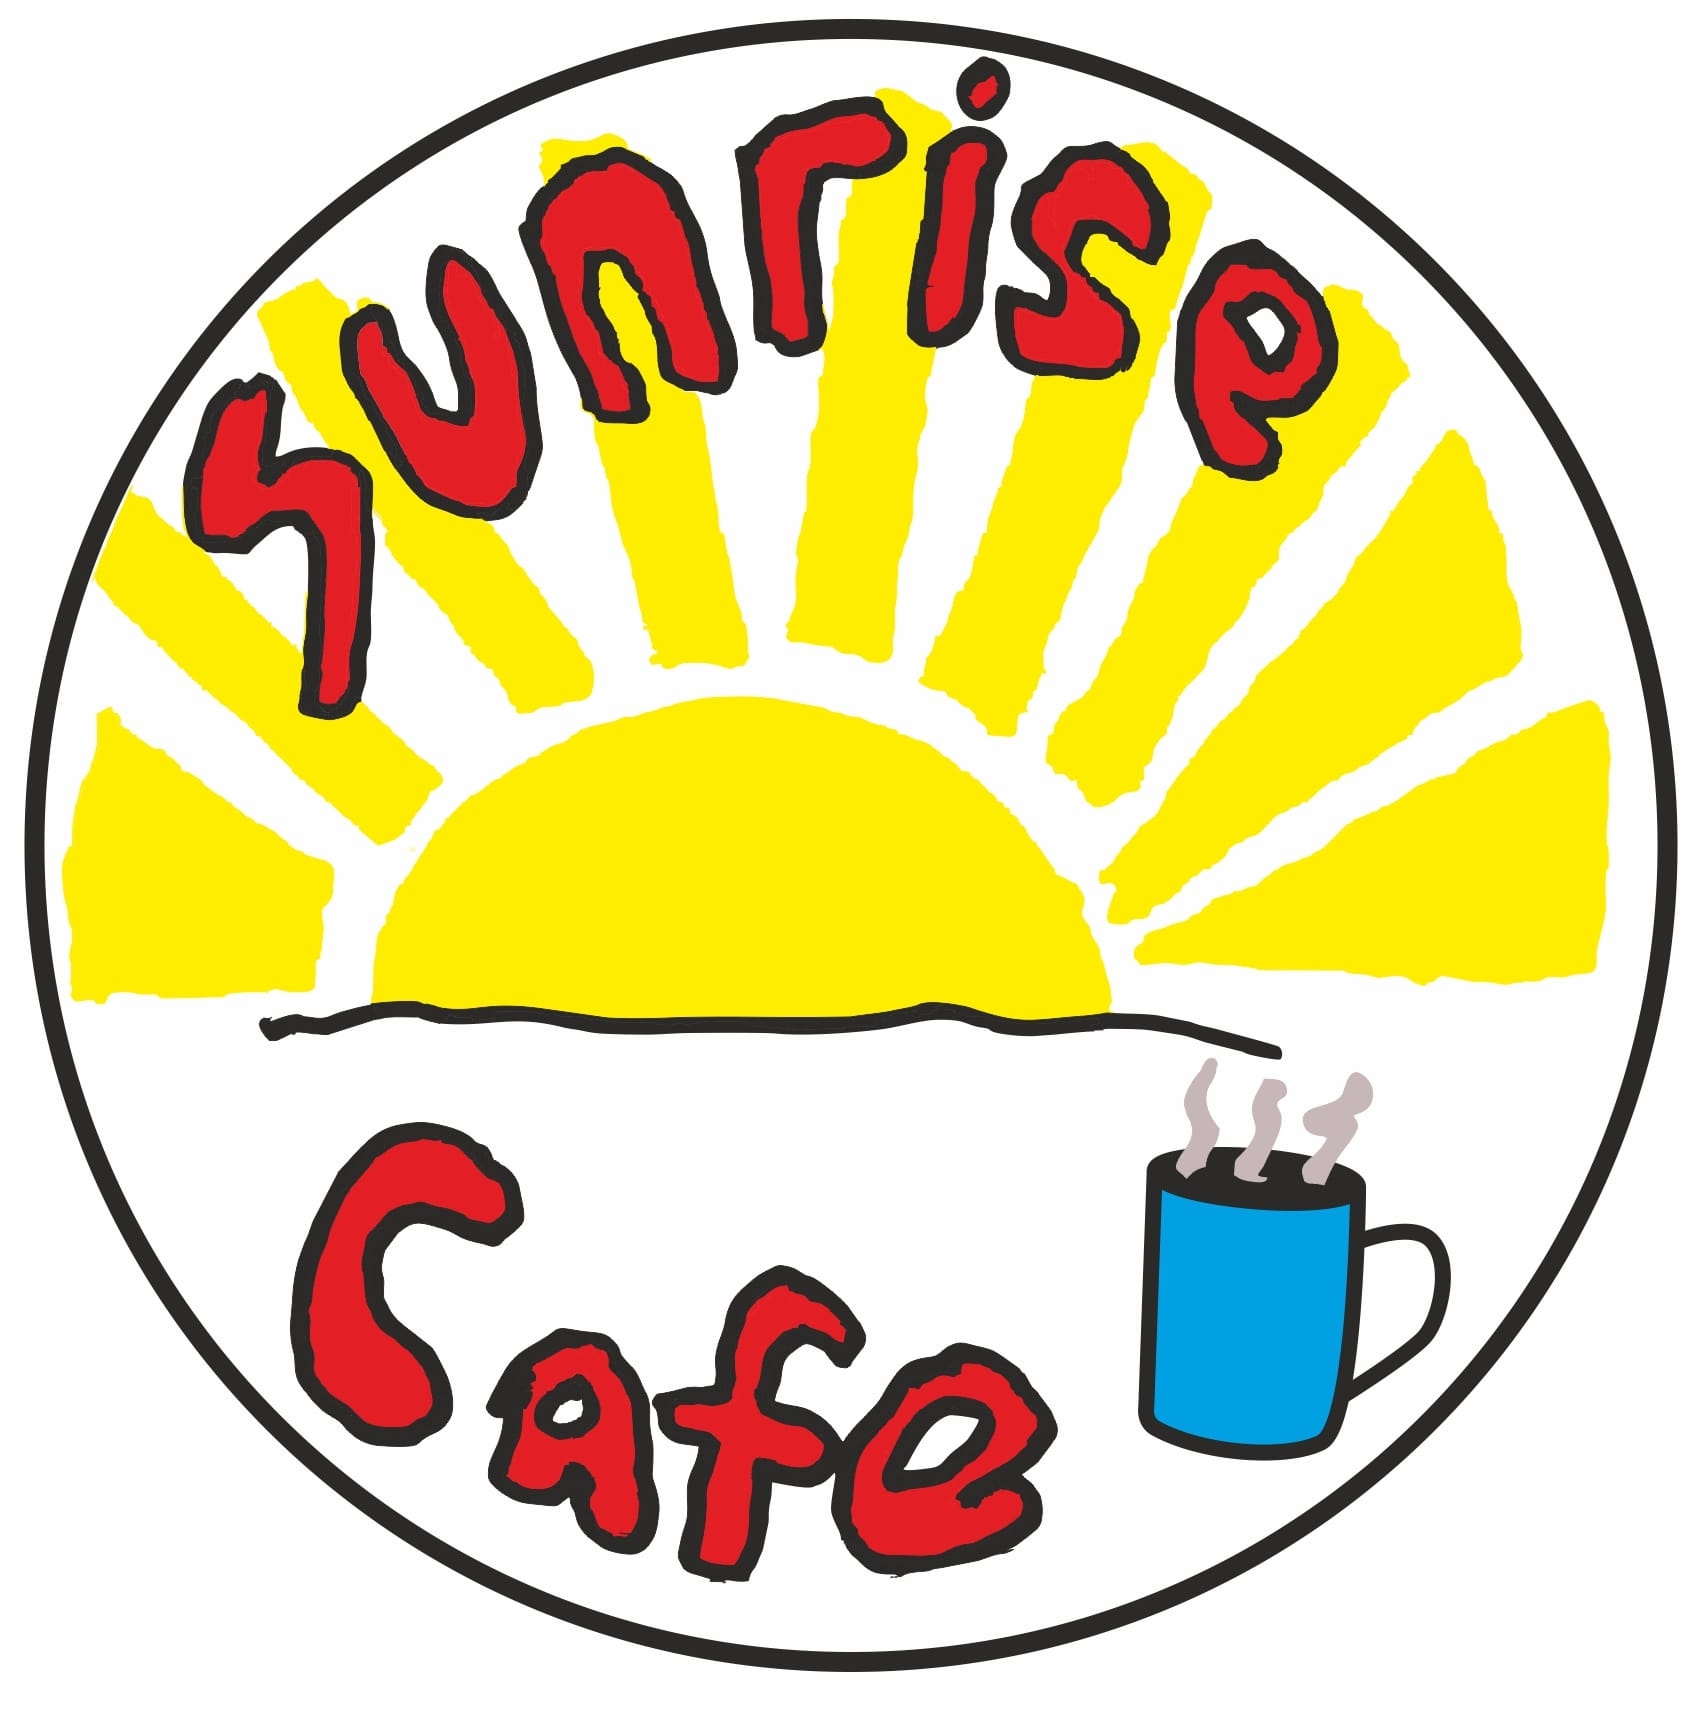 Sunrise Cafe logo